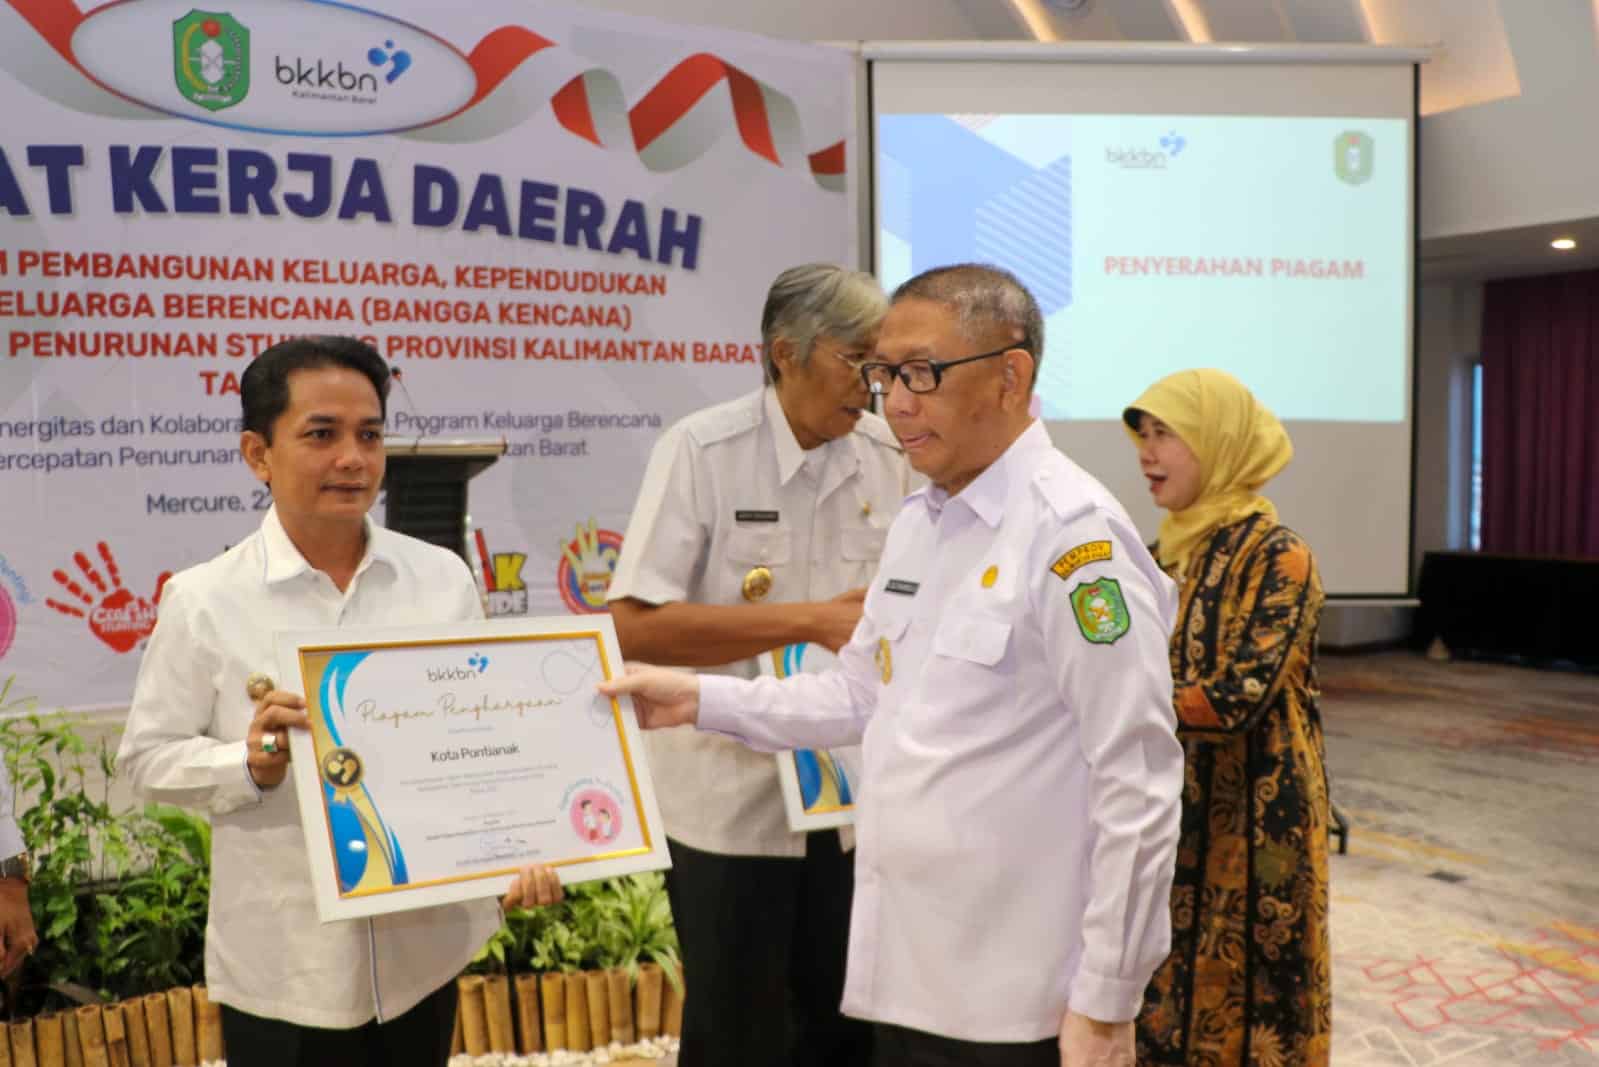 Wakil Wali Kota Pontianak, Bahasan menerima piagam penghargaan dari BKKBN yang diserahkan oleh Gubernur Kalbar Sutarmidji. (Foto: Prokopim Kalbar Online.com)